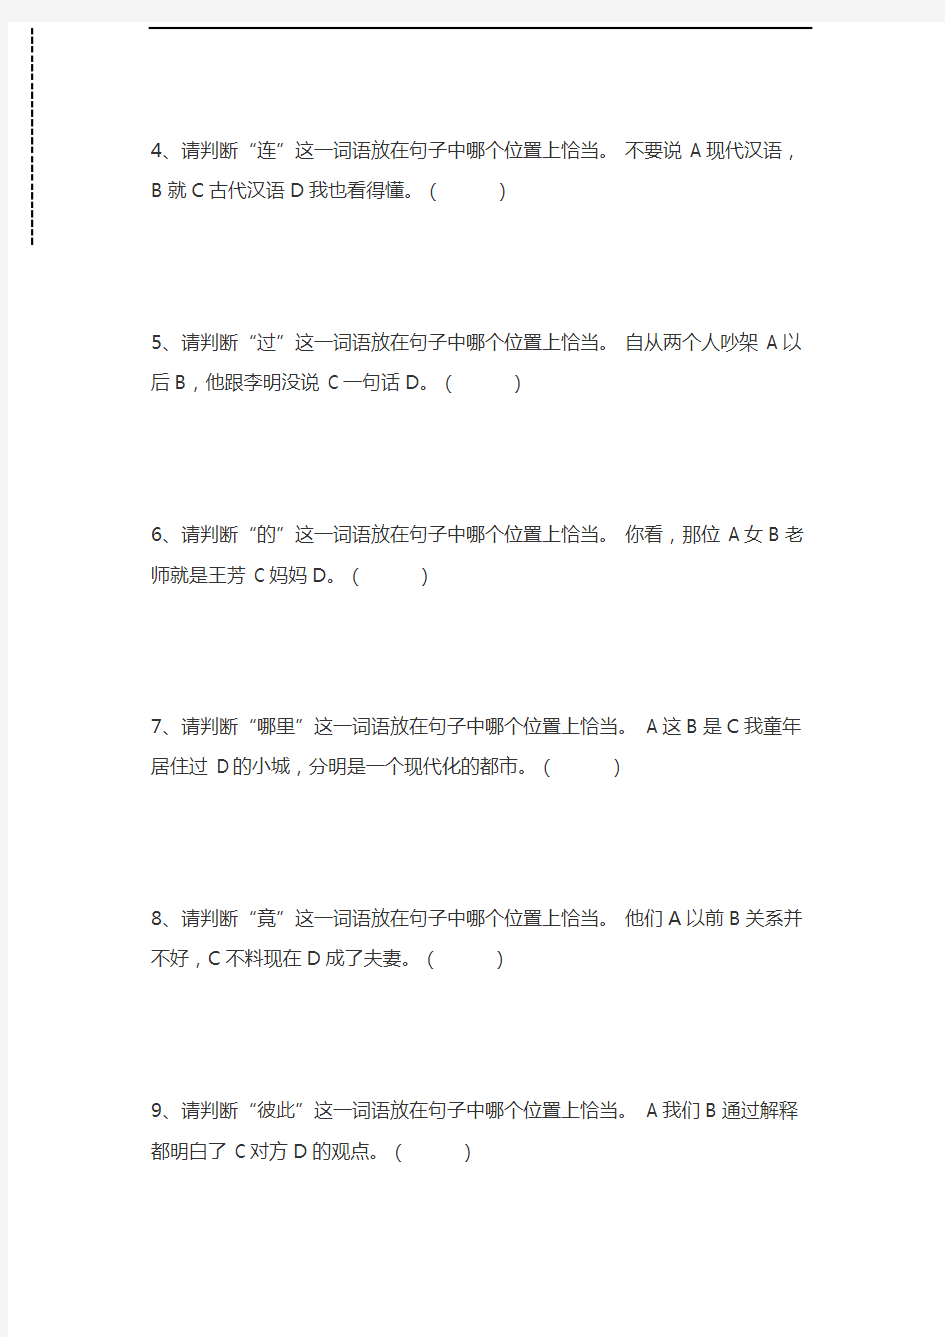 汉语水平考试中国汉语水平考试(初、中等)模拟试题一考试卷模拟考试题.docx